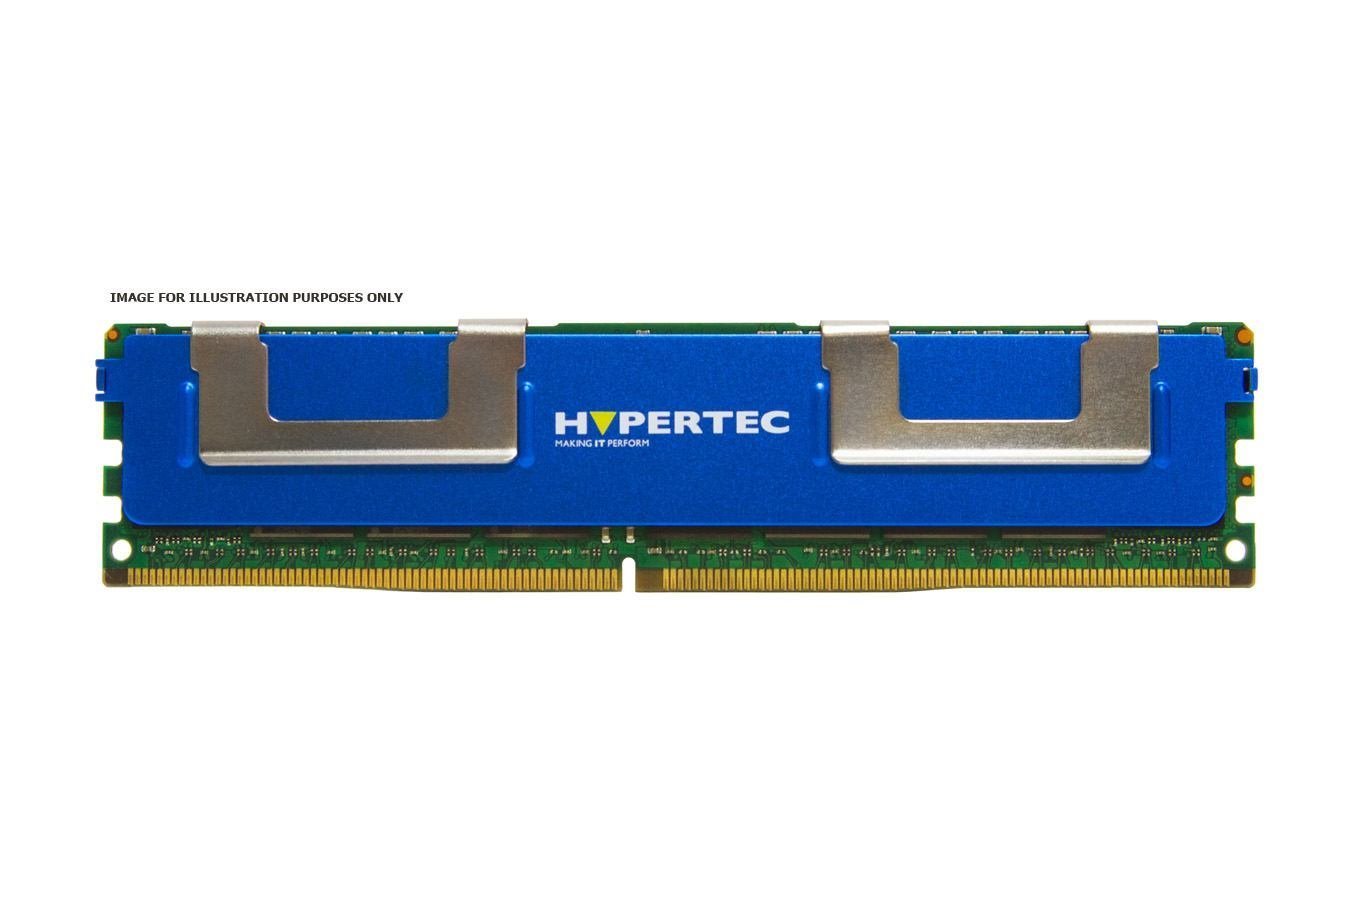 Hypertec RAM Module - 8 GB - DDR3-1600/PC3-12800 DDR3 SDRAM - 1600 MHz